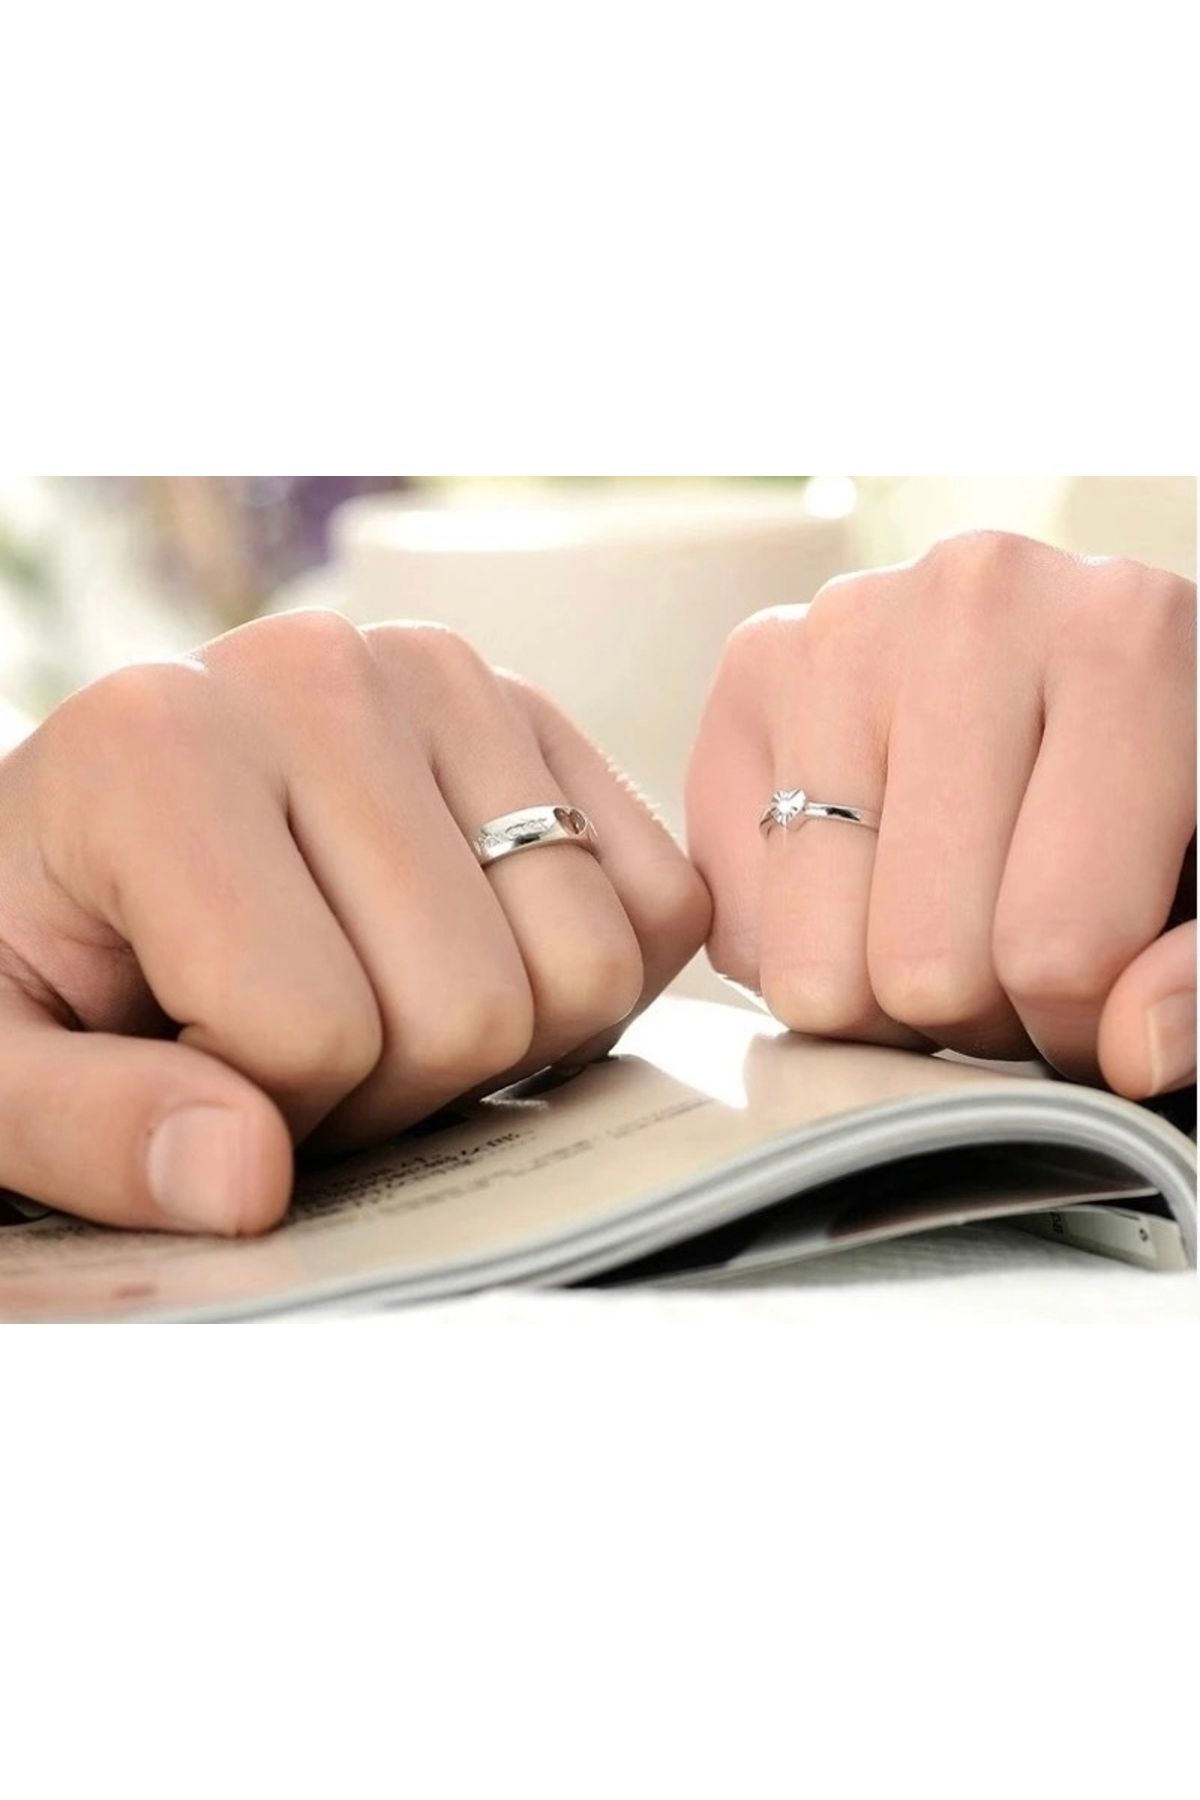 LadyBug Store Kalbimin sahibine temalı bakır çift yüzüğü sevgili yüzüğü